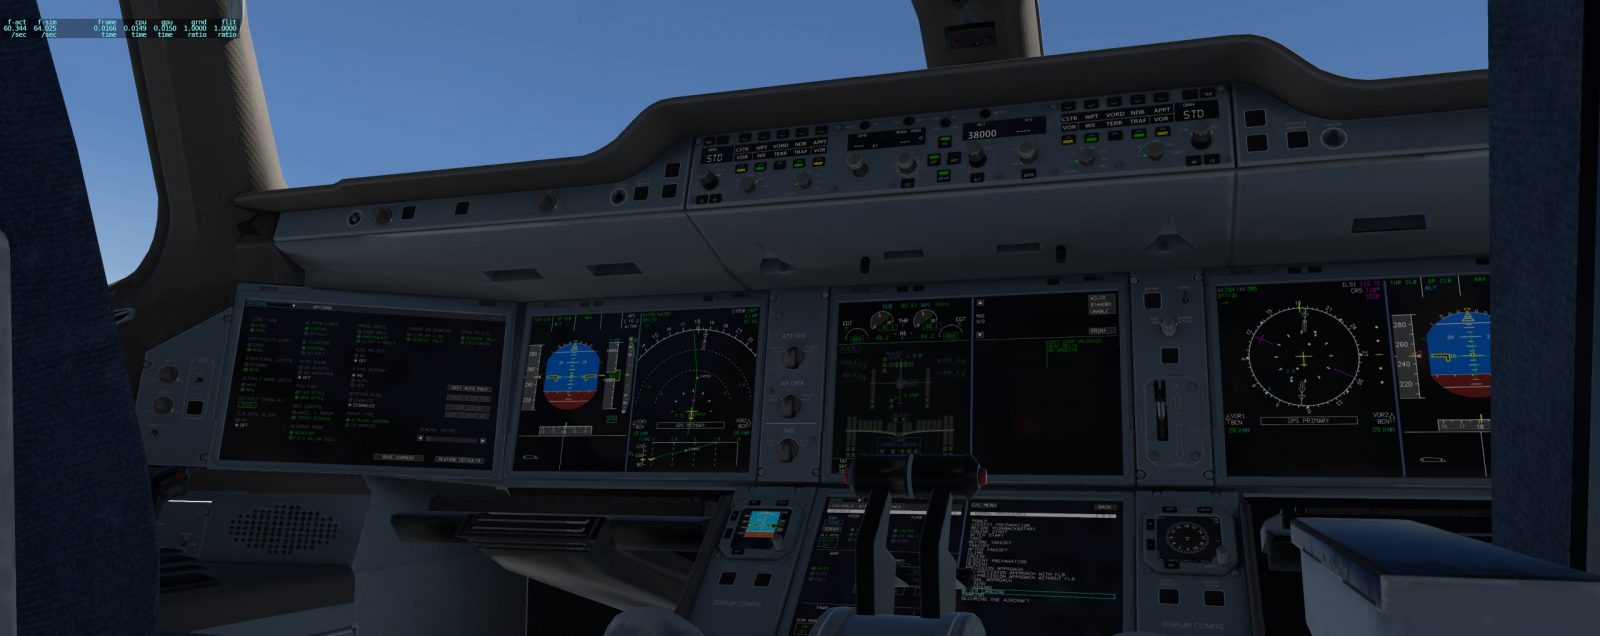 A350驾驶舱-7712 